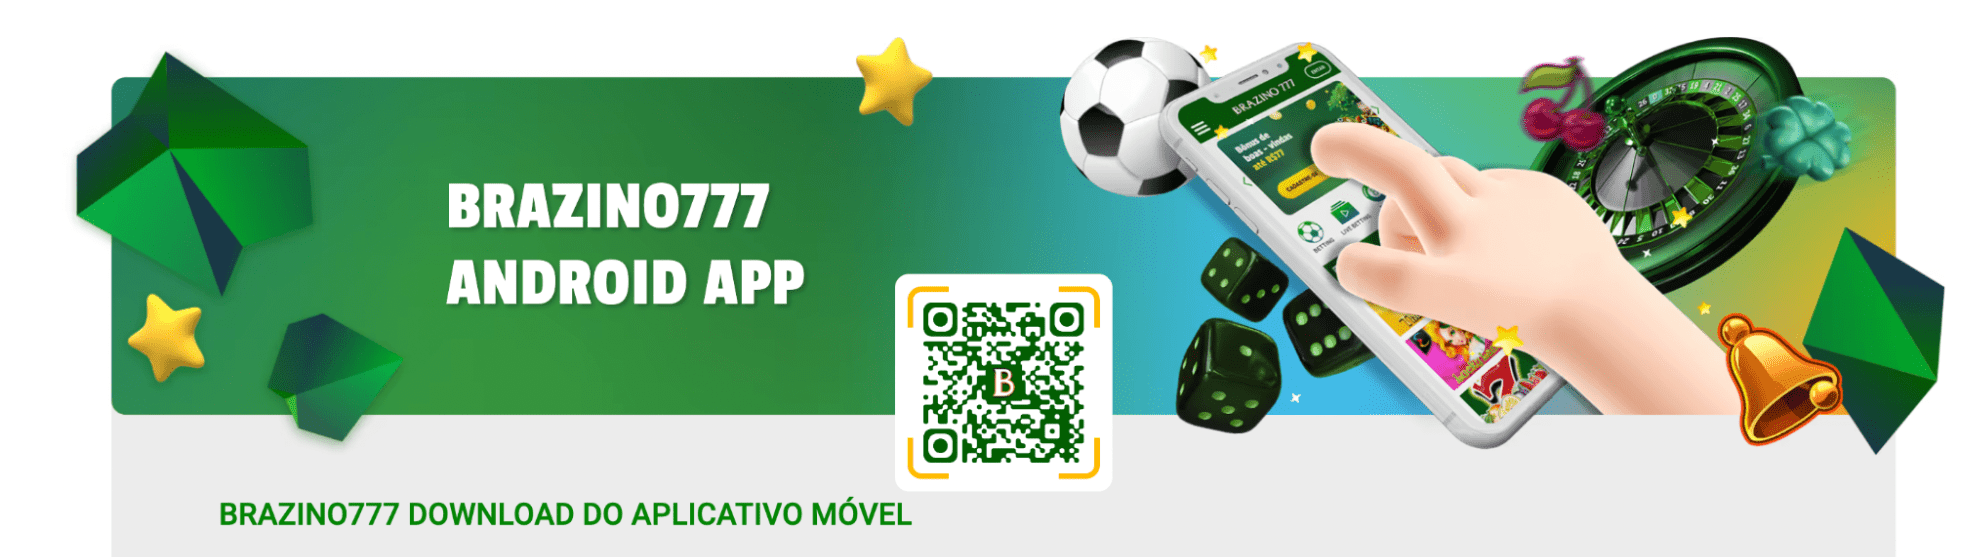 Brazino777 Android App